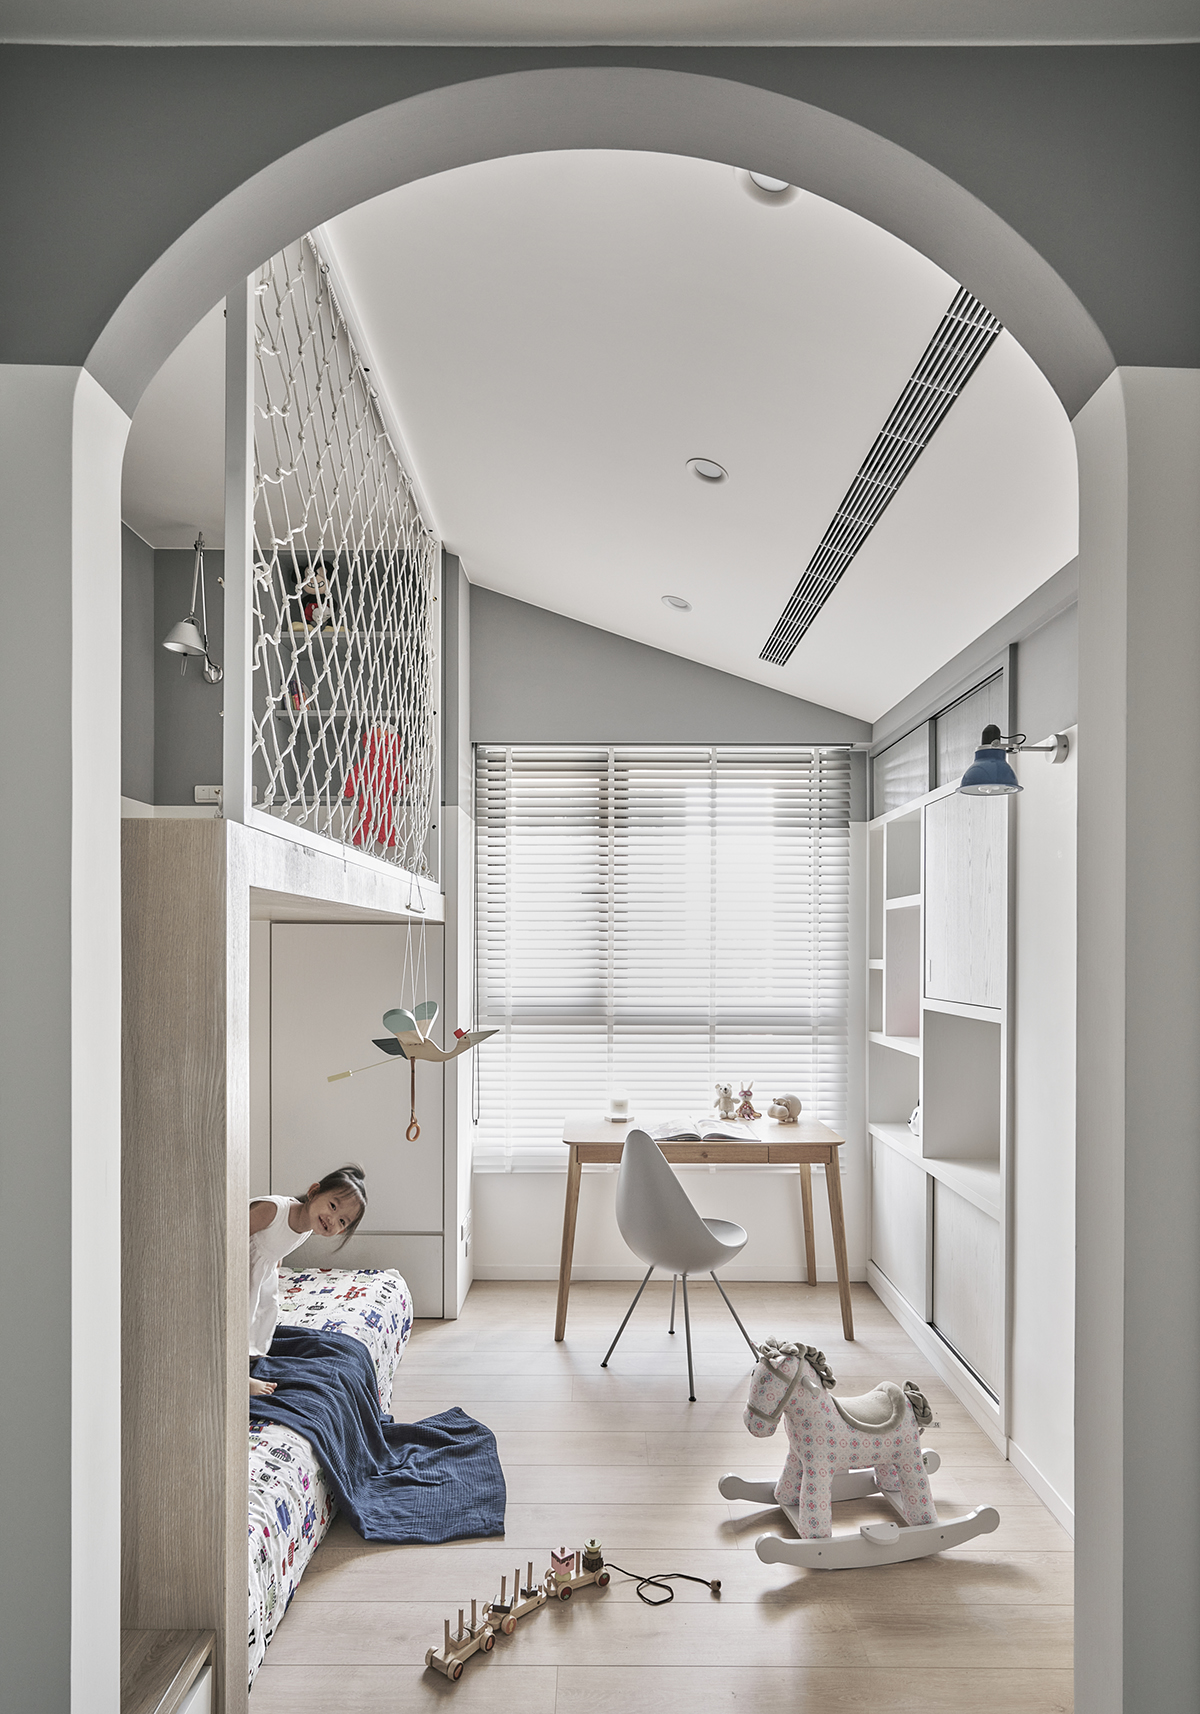 Căn hộ 50m² tạo ấn tượng với thiết kế độc đáo dành cho gia đình trẻ 3 thành viên - Ảnh 14.